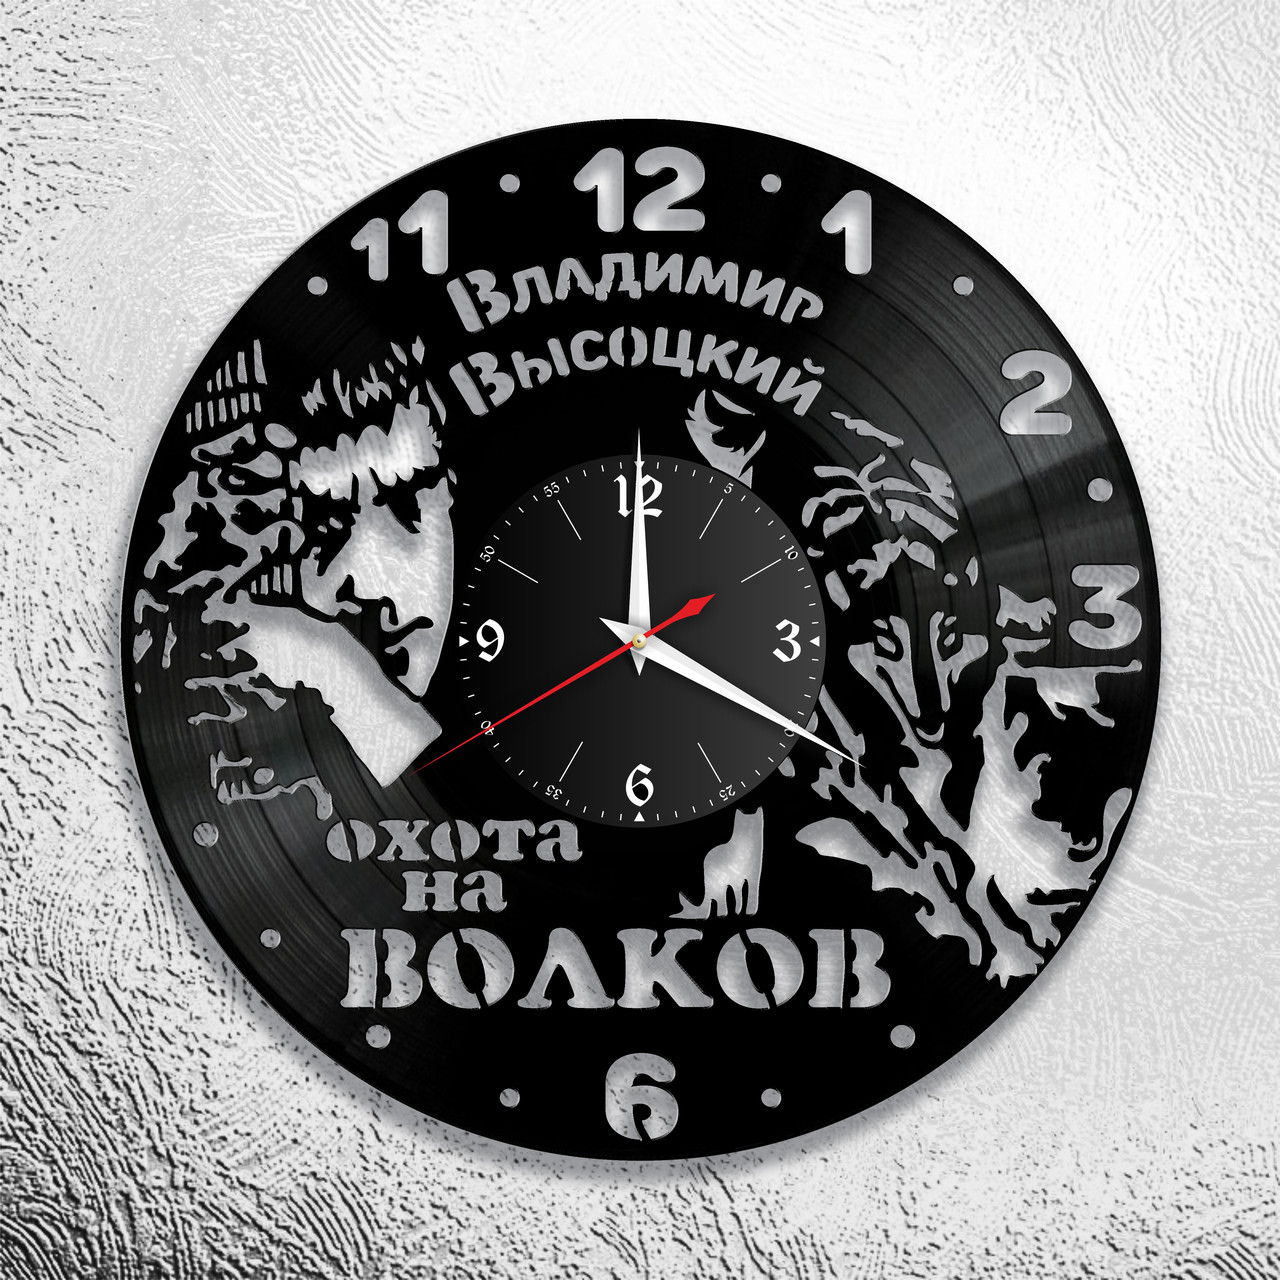 Оригинальные часы из виниловых пластинок "Высоцкий" версия 5